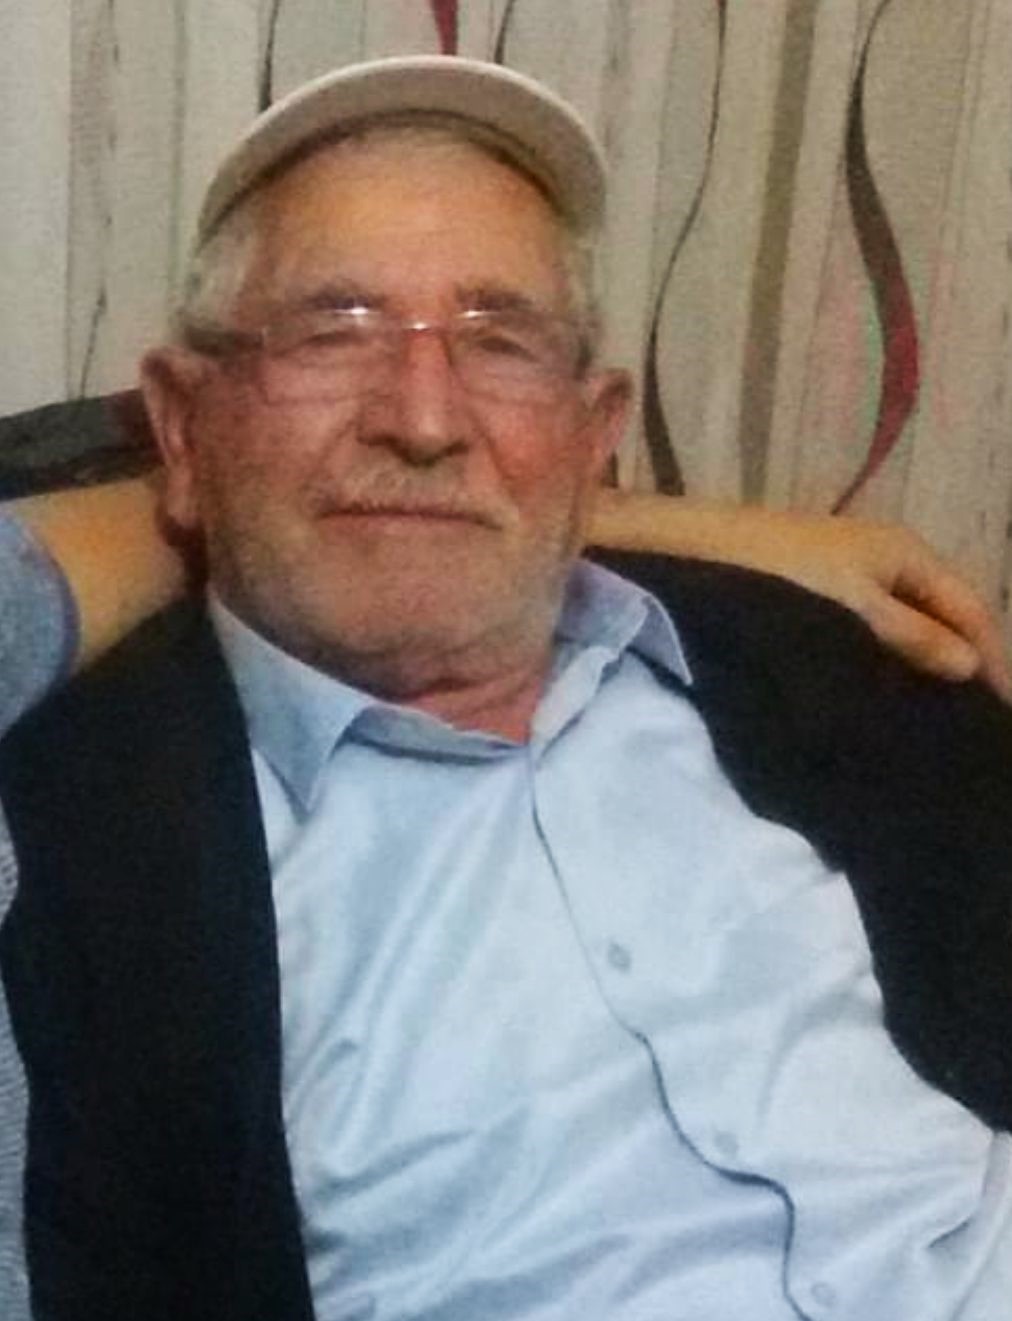 Yozgat’ta oy kullanacağı sırada kalp krizi geçiren bir kişi öldü